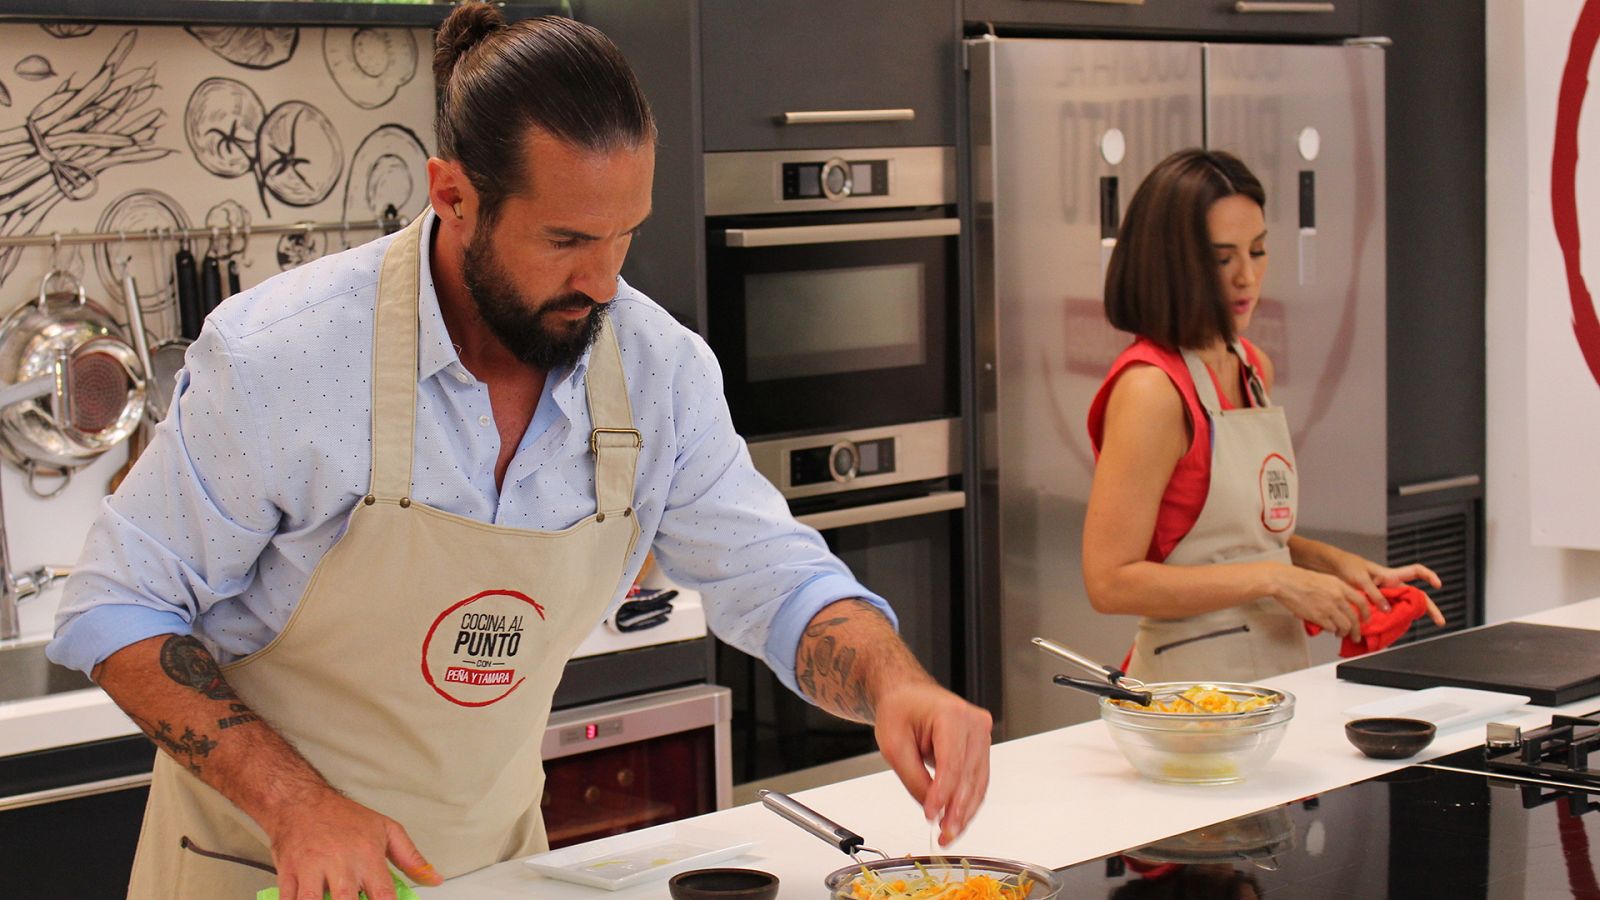 Cocina al punto con Peña y Tamara - Higos chumbos - RTVE.es